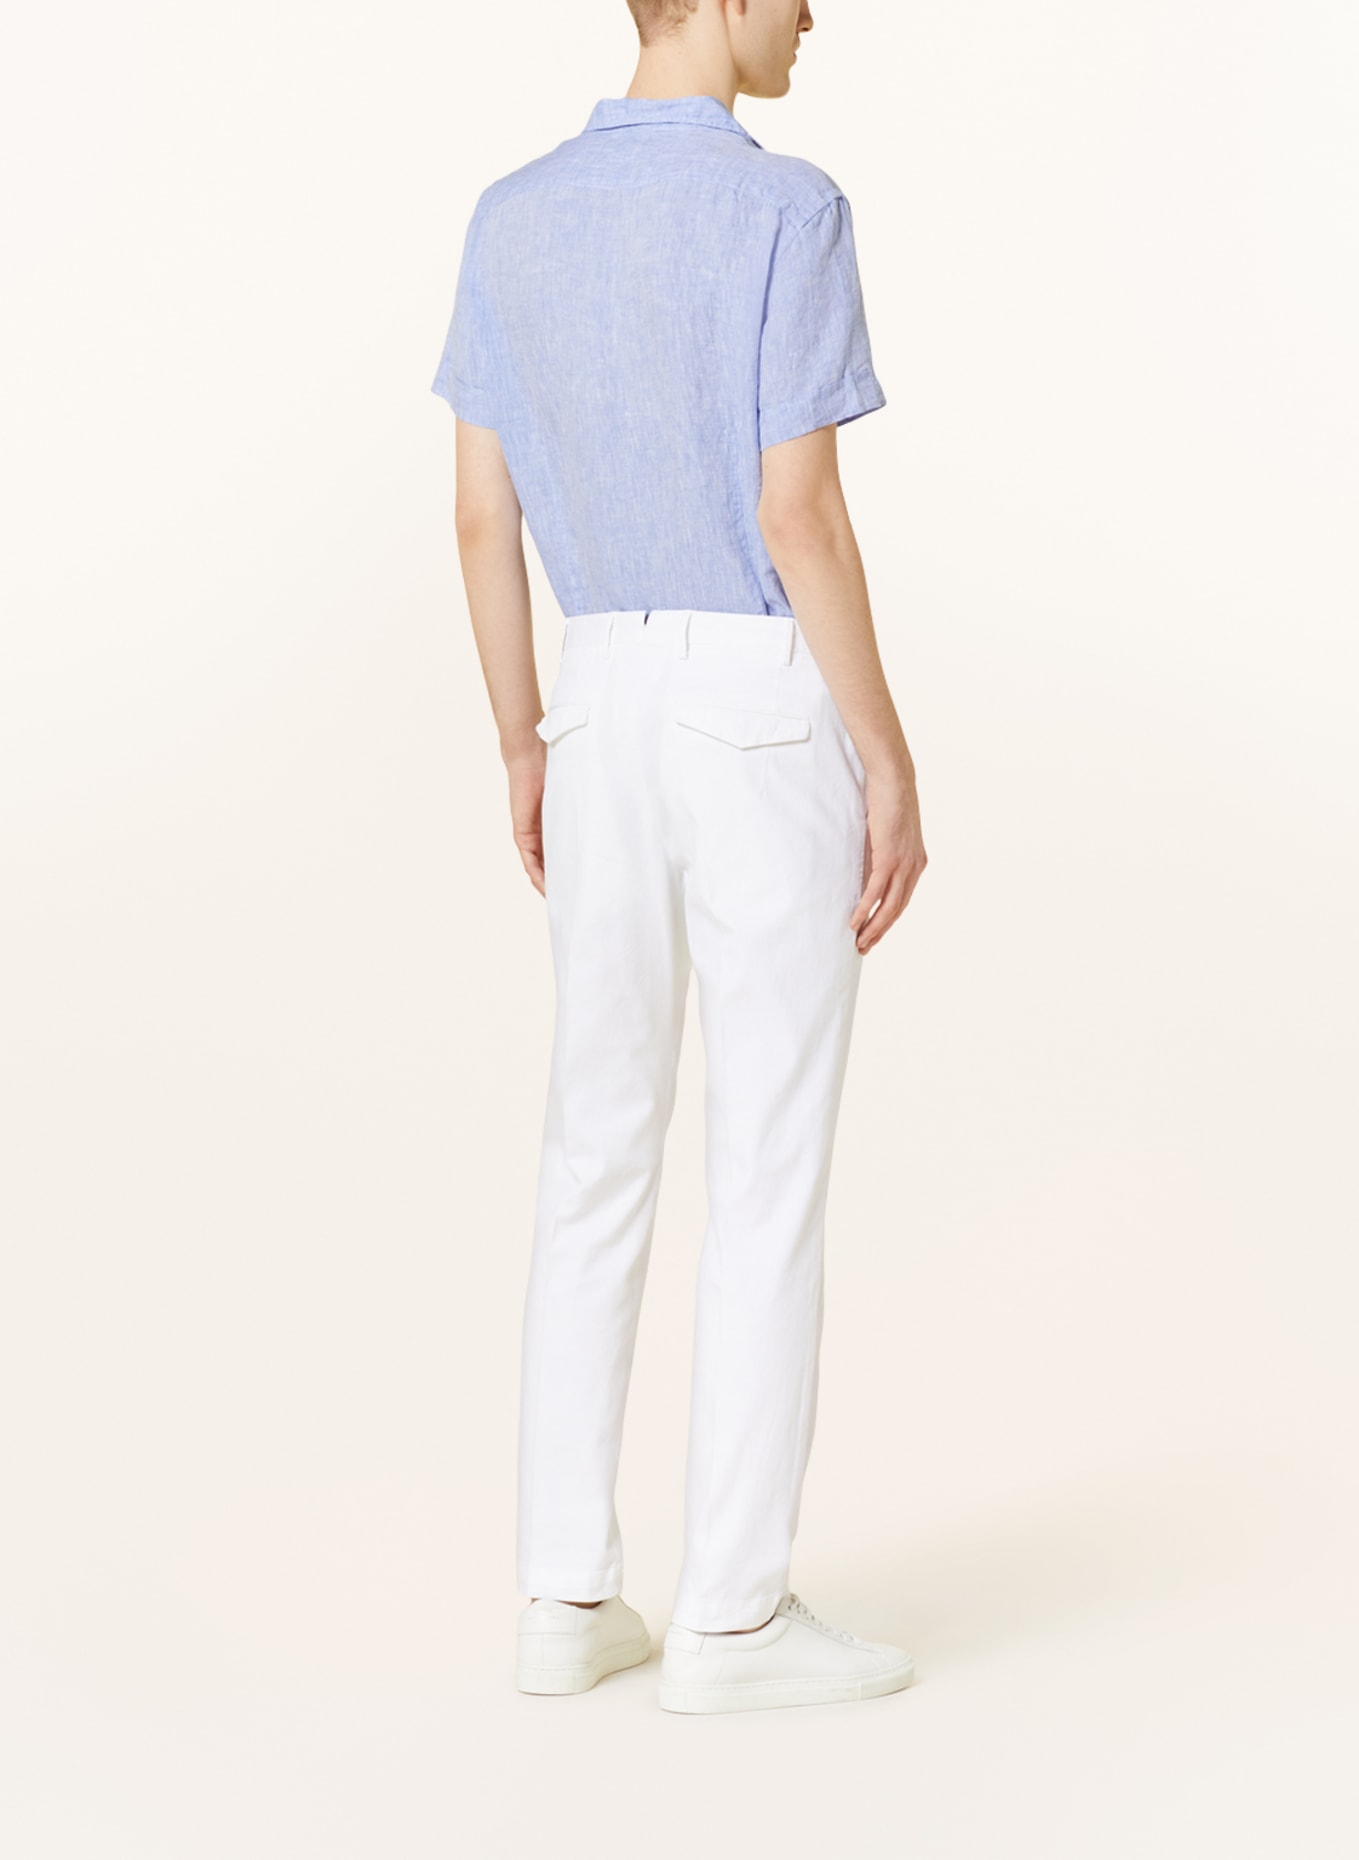 Q1 Manufaktur Short sleeve shirt extra slim fit made of linen, Color: LIGHT BLUE (Image 3)